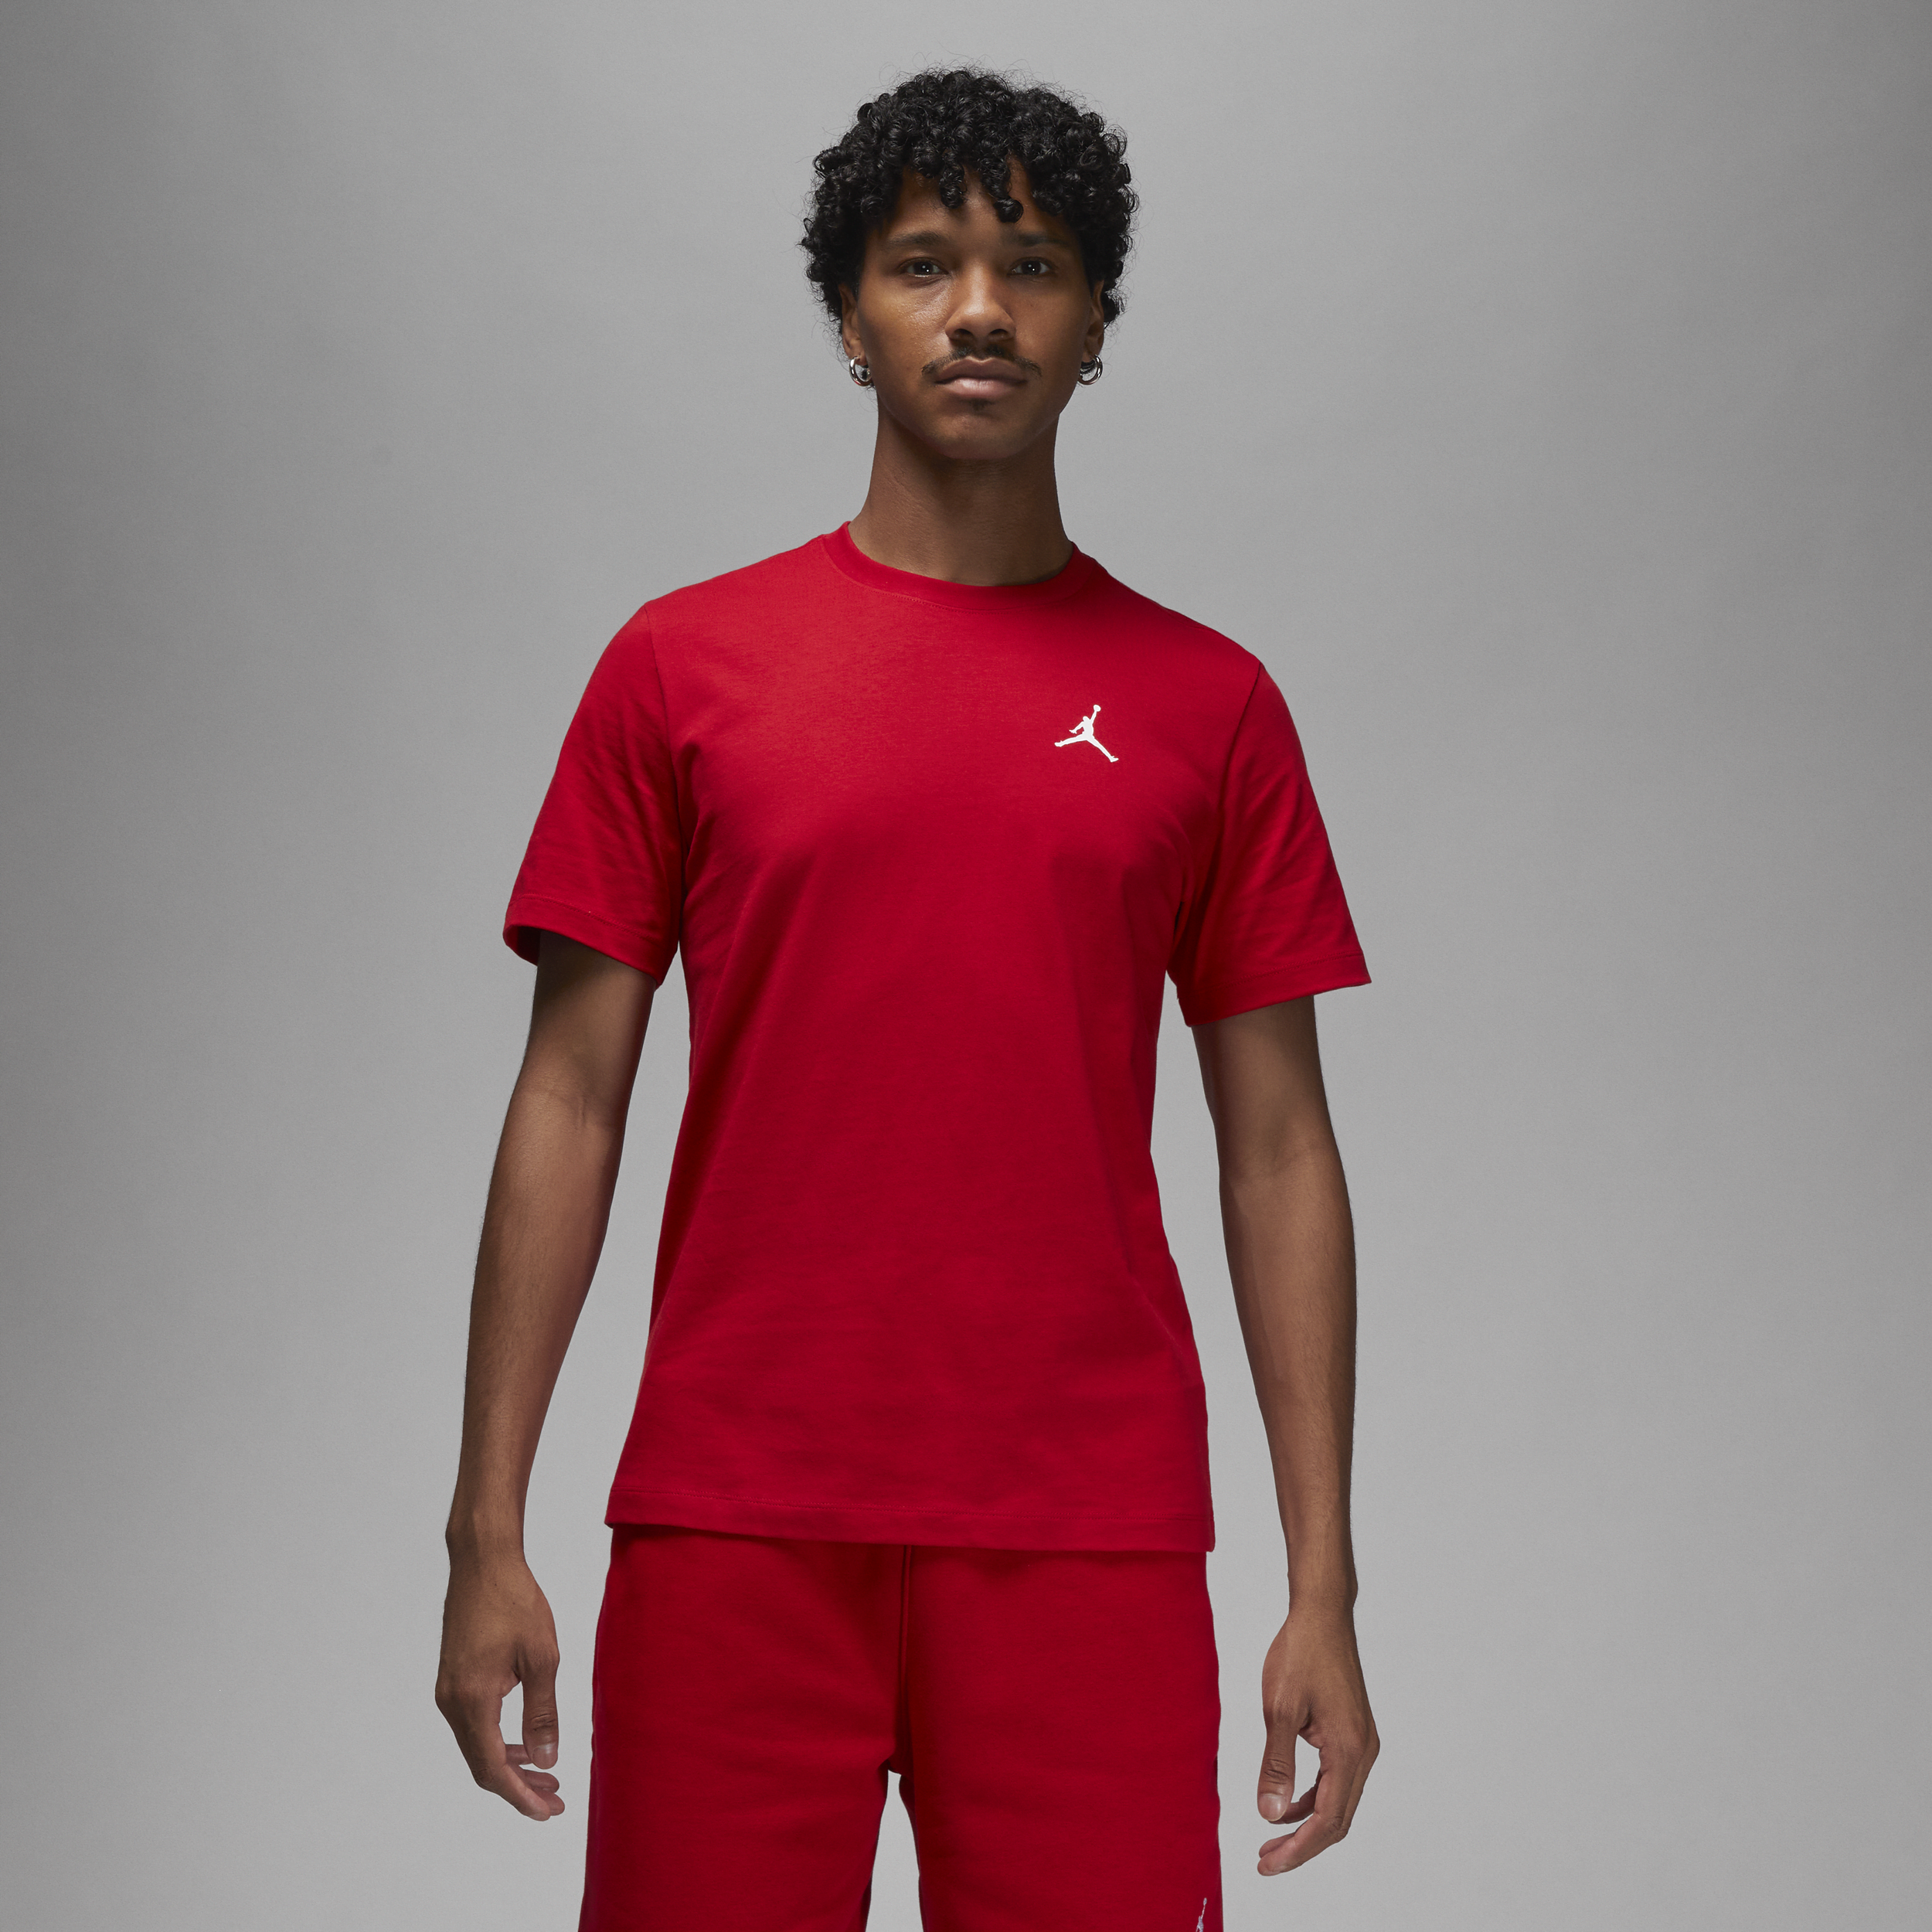 Jordan Brand-T-shirt til mænd - rød